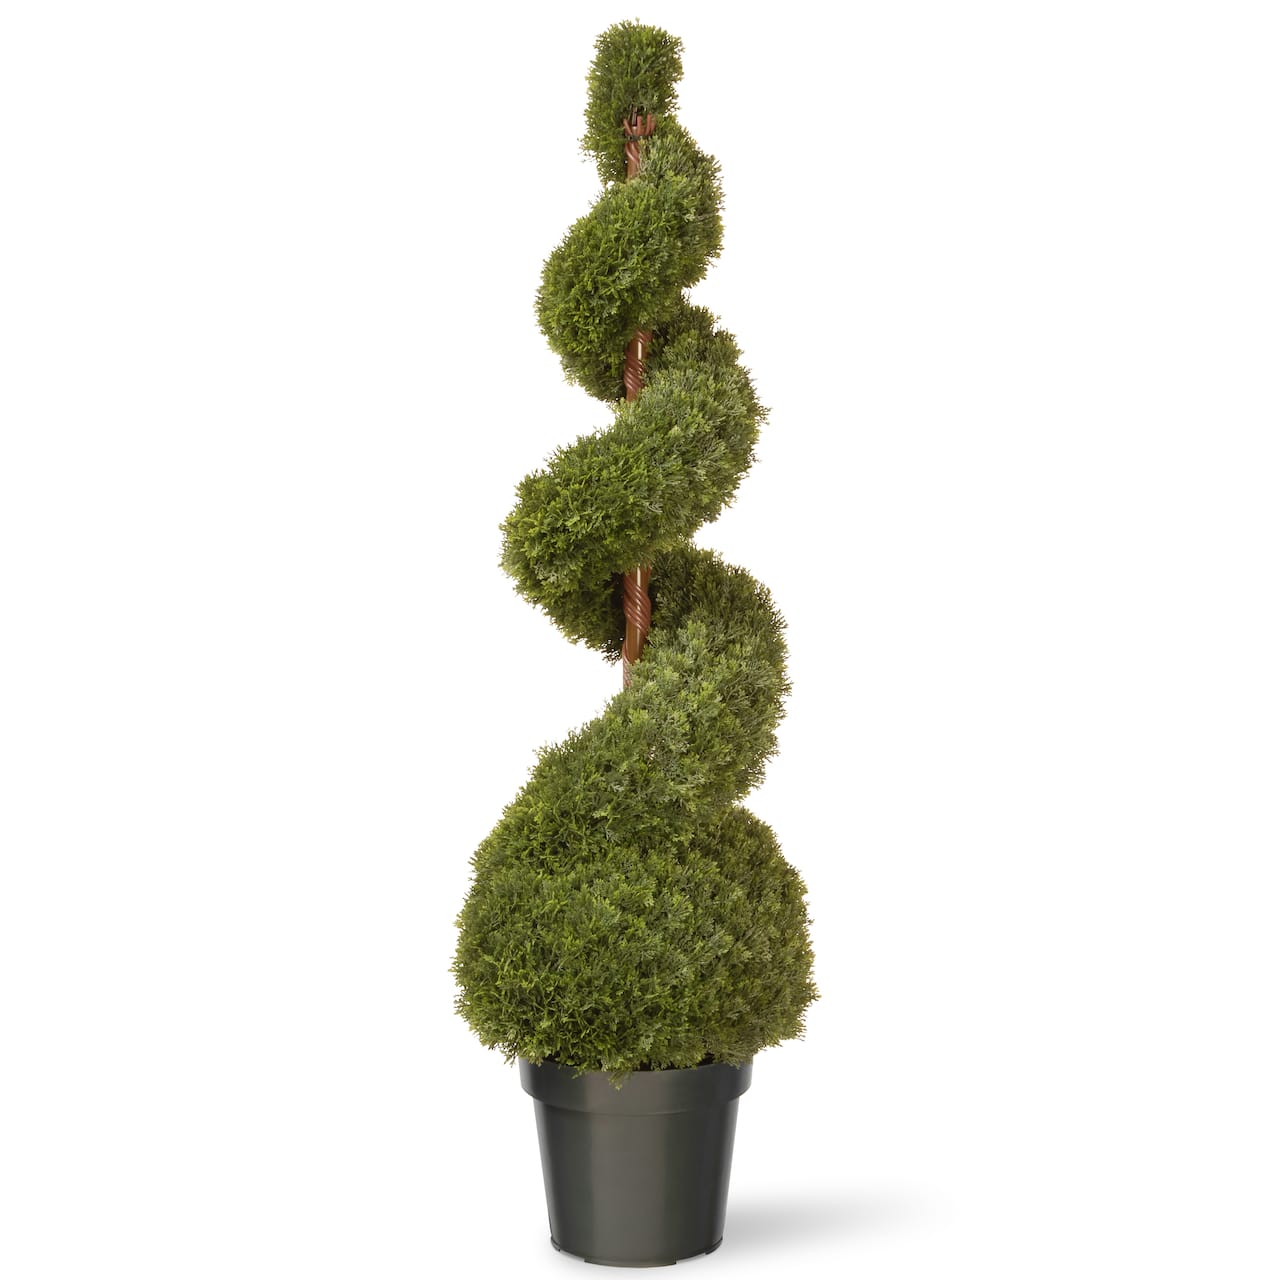 4ft. Cedar Spiral with Ball in Green Pot